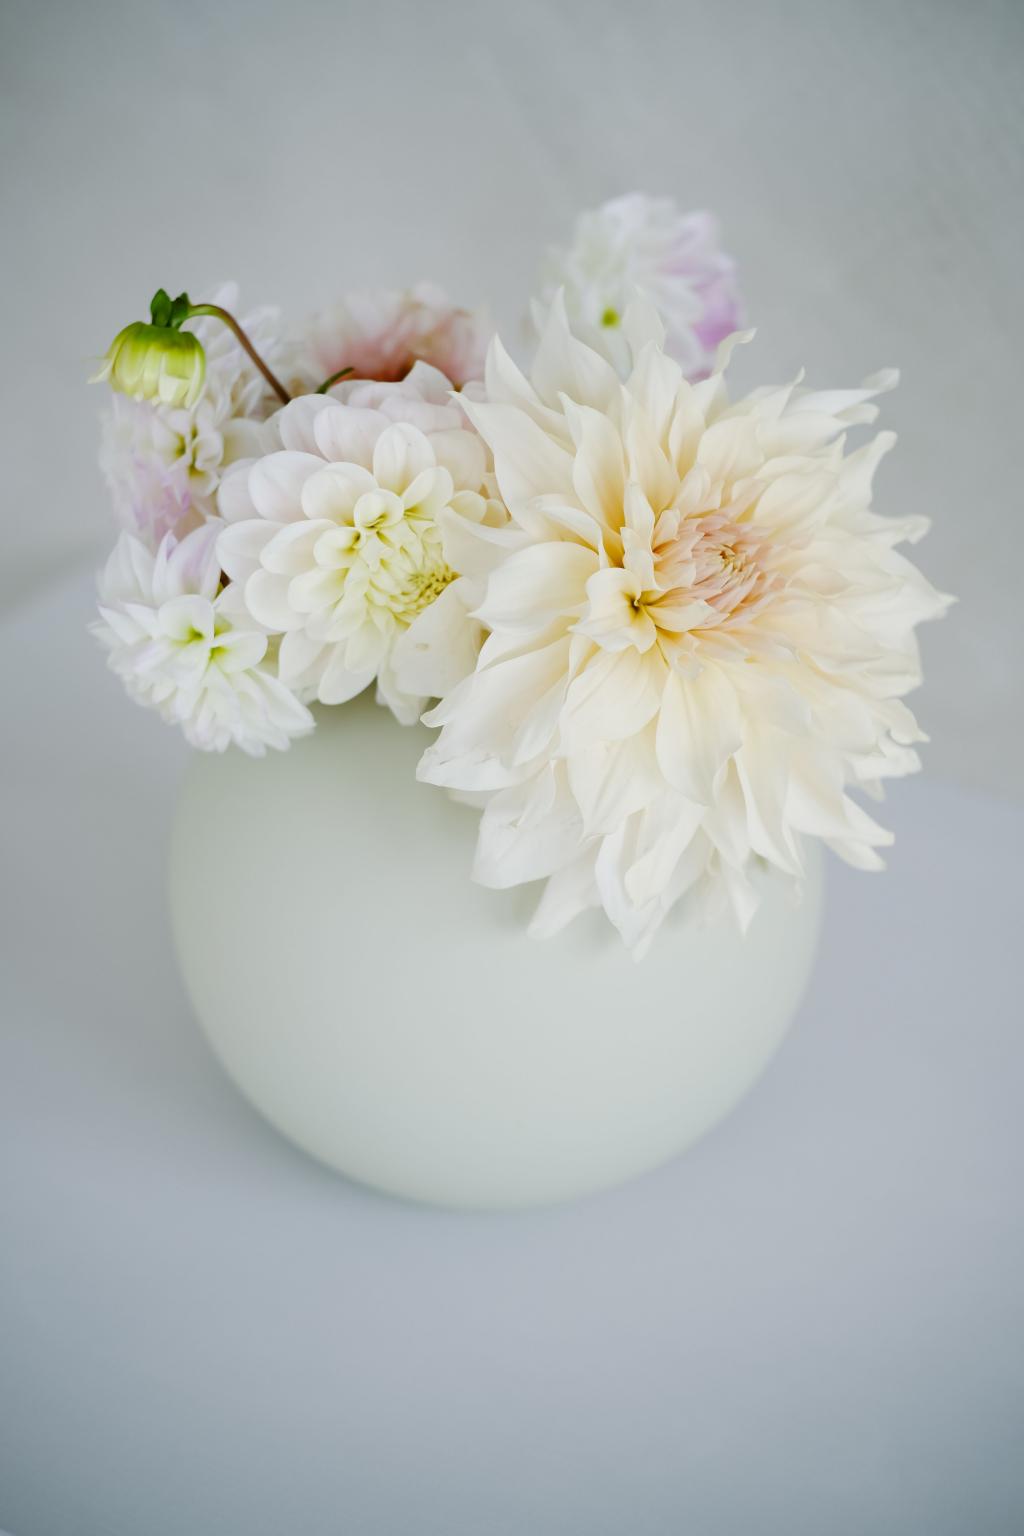 圆形花瓶中的白色大丽花